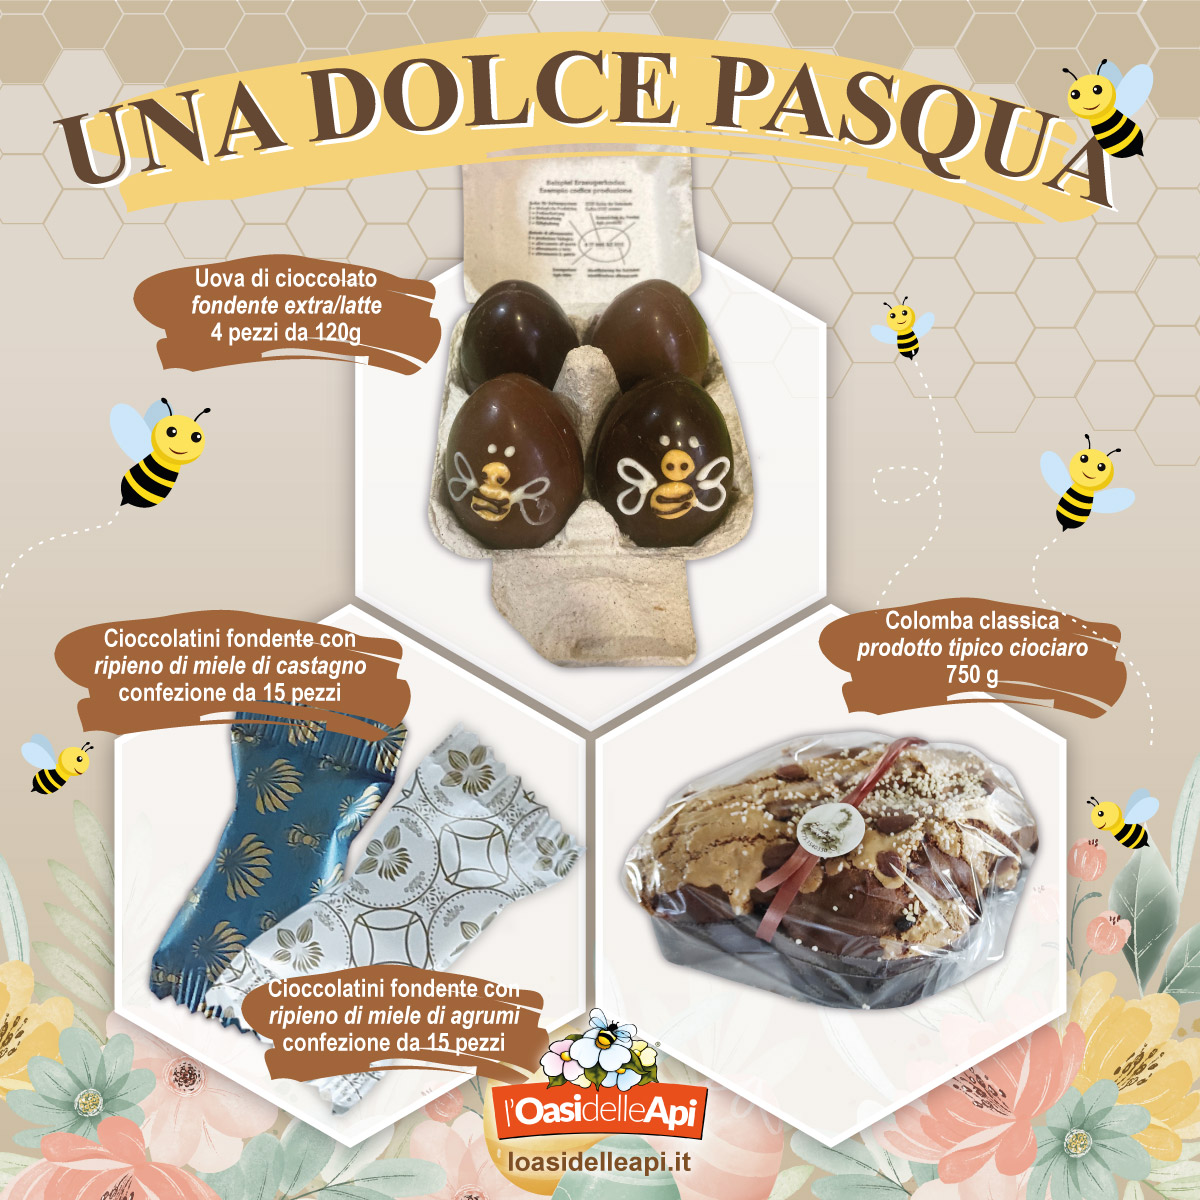 dolci-di-pasqua-uova-di-cioccolato-colomba-classica-cioccolatini-al-miele-oasi-delle-api-sermoneta-latina